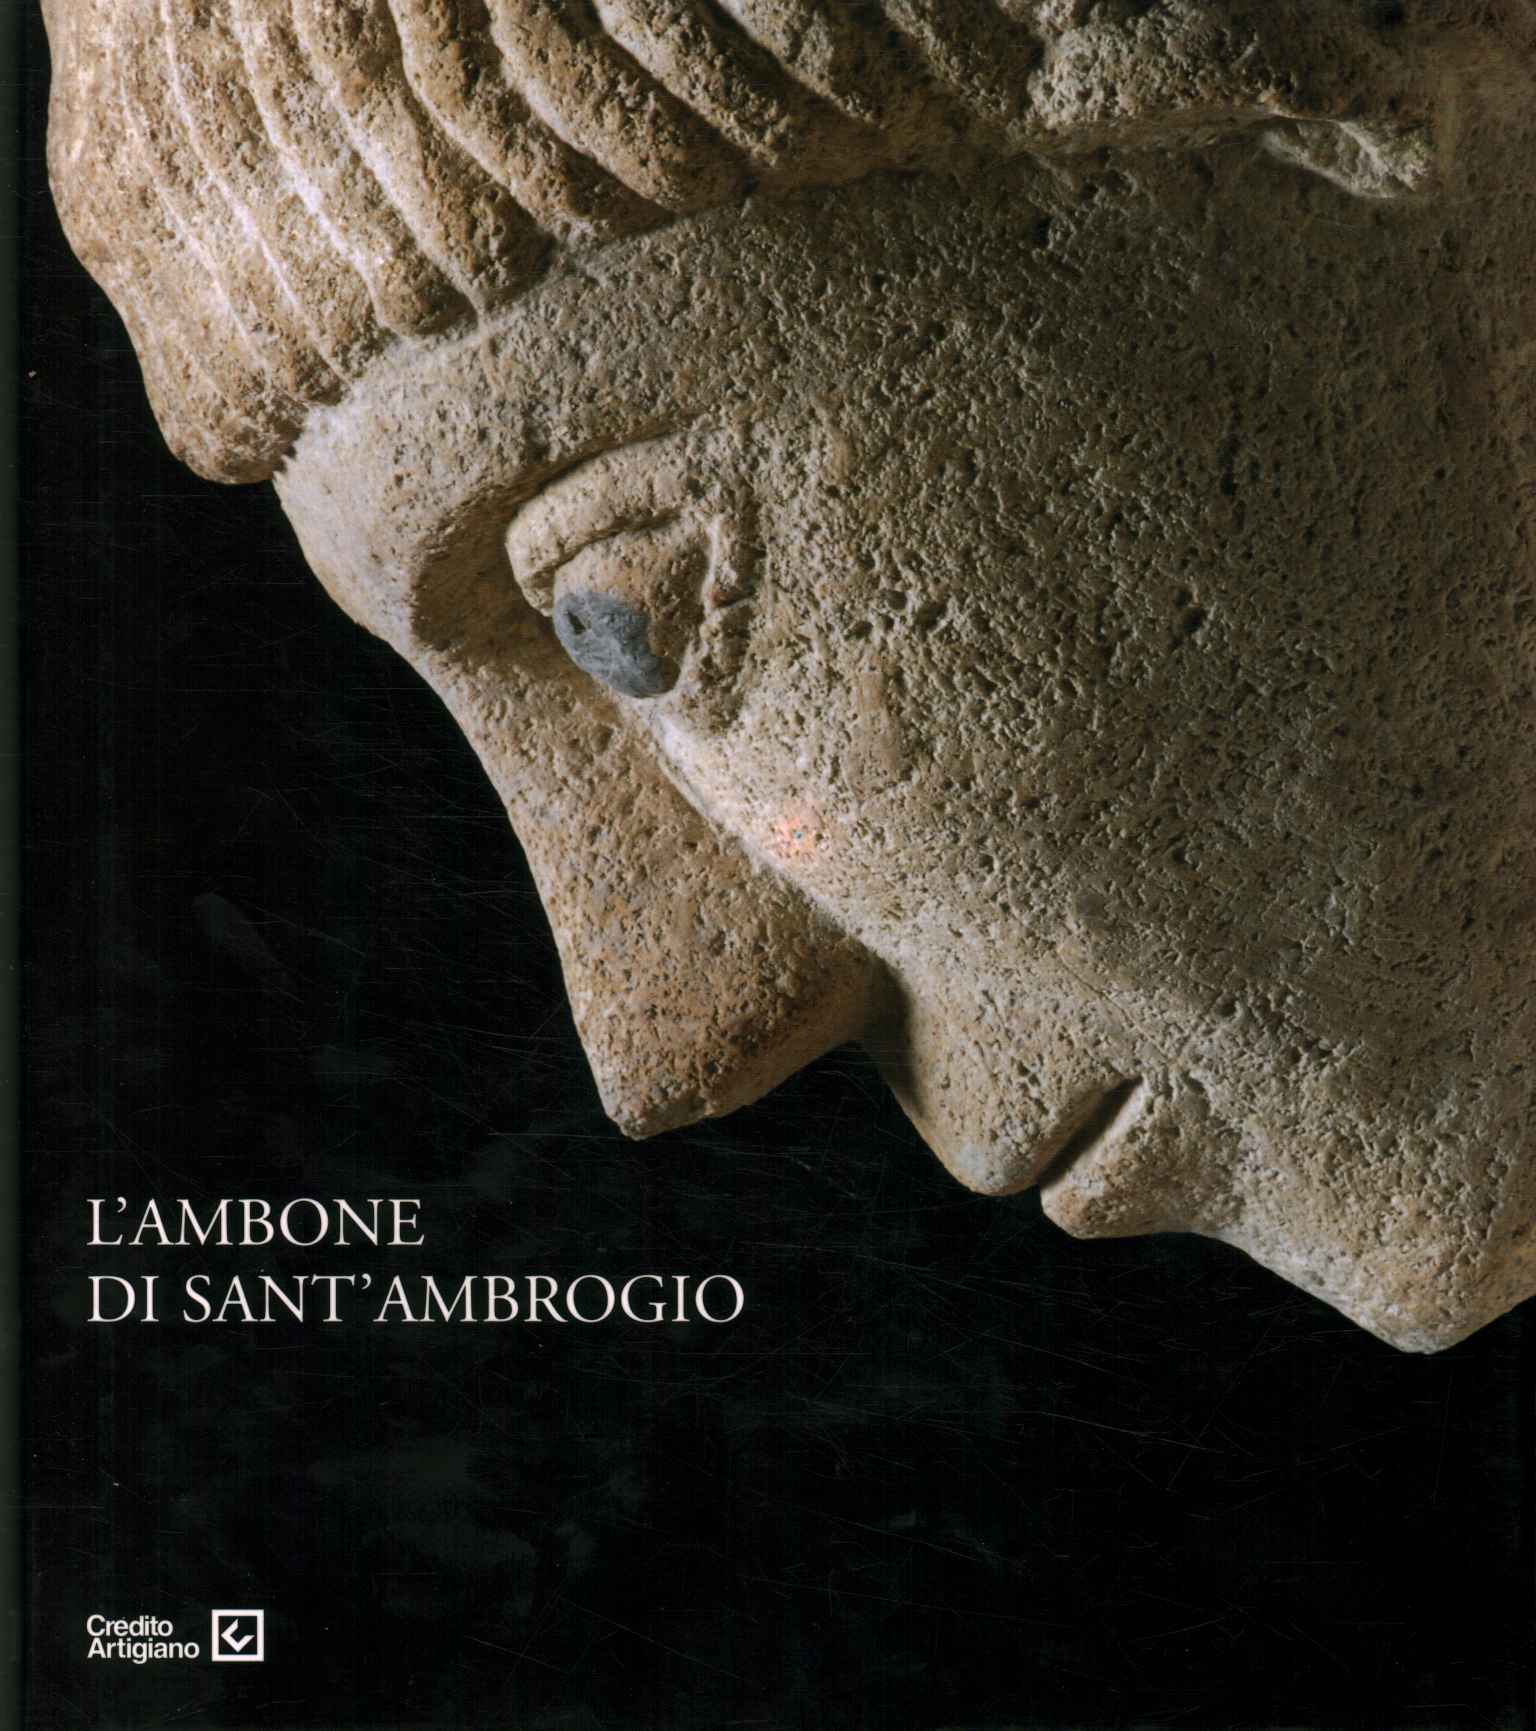 El ambón de Sant'Ambrogi